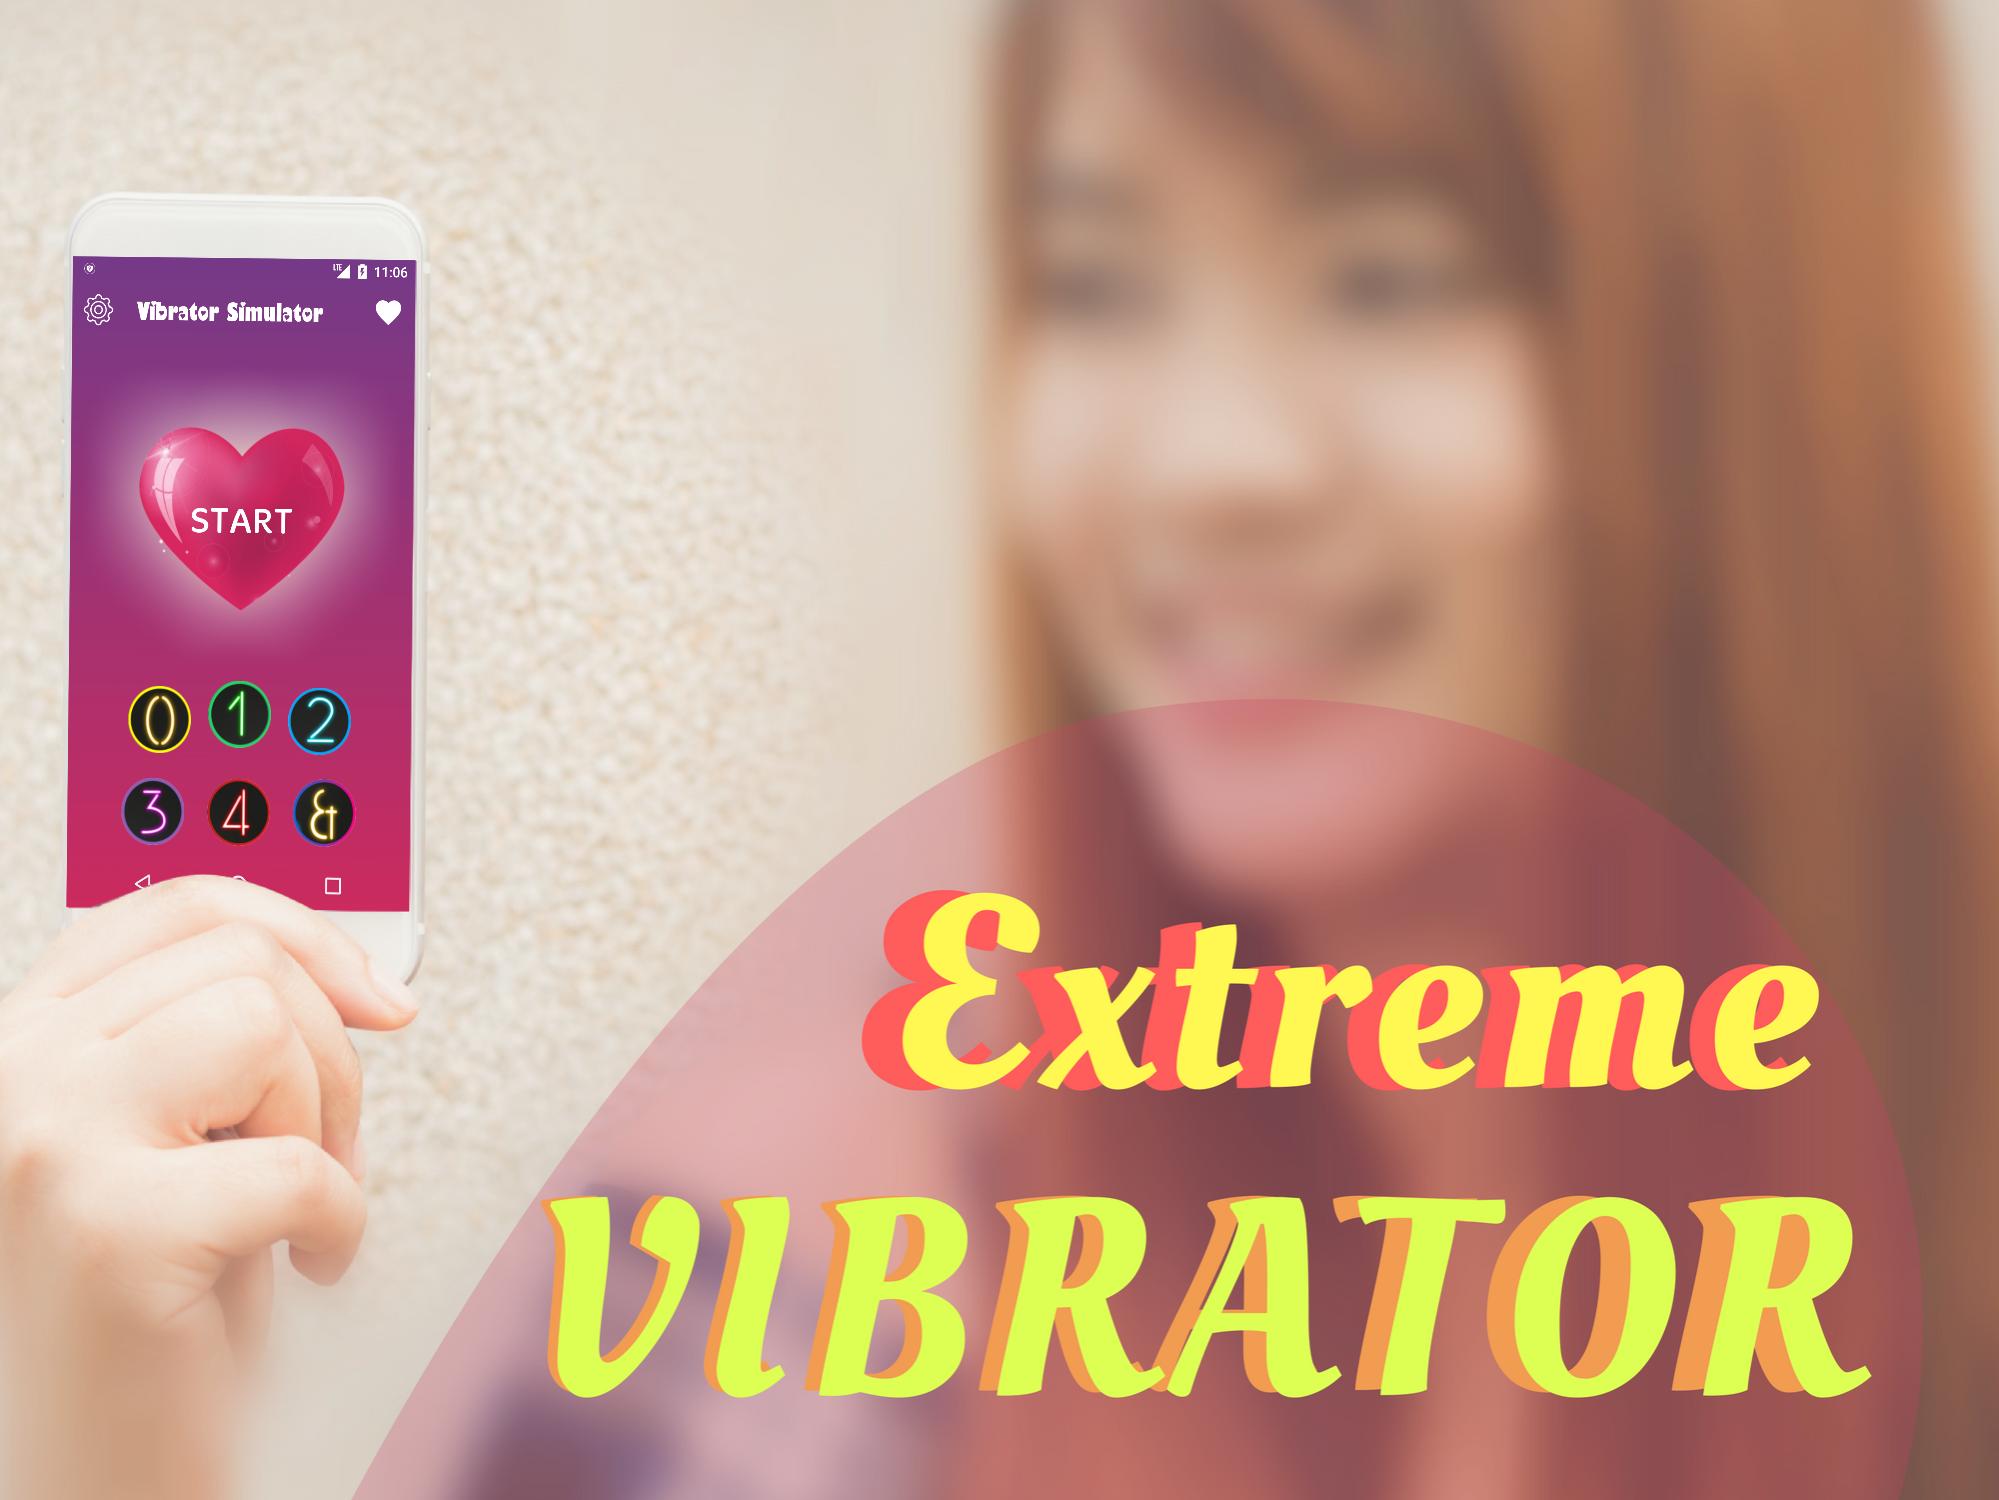 Women Vibration. Массаж вибратион. Vibration massage. Joysy – massage Vibration app for men and women.